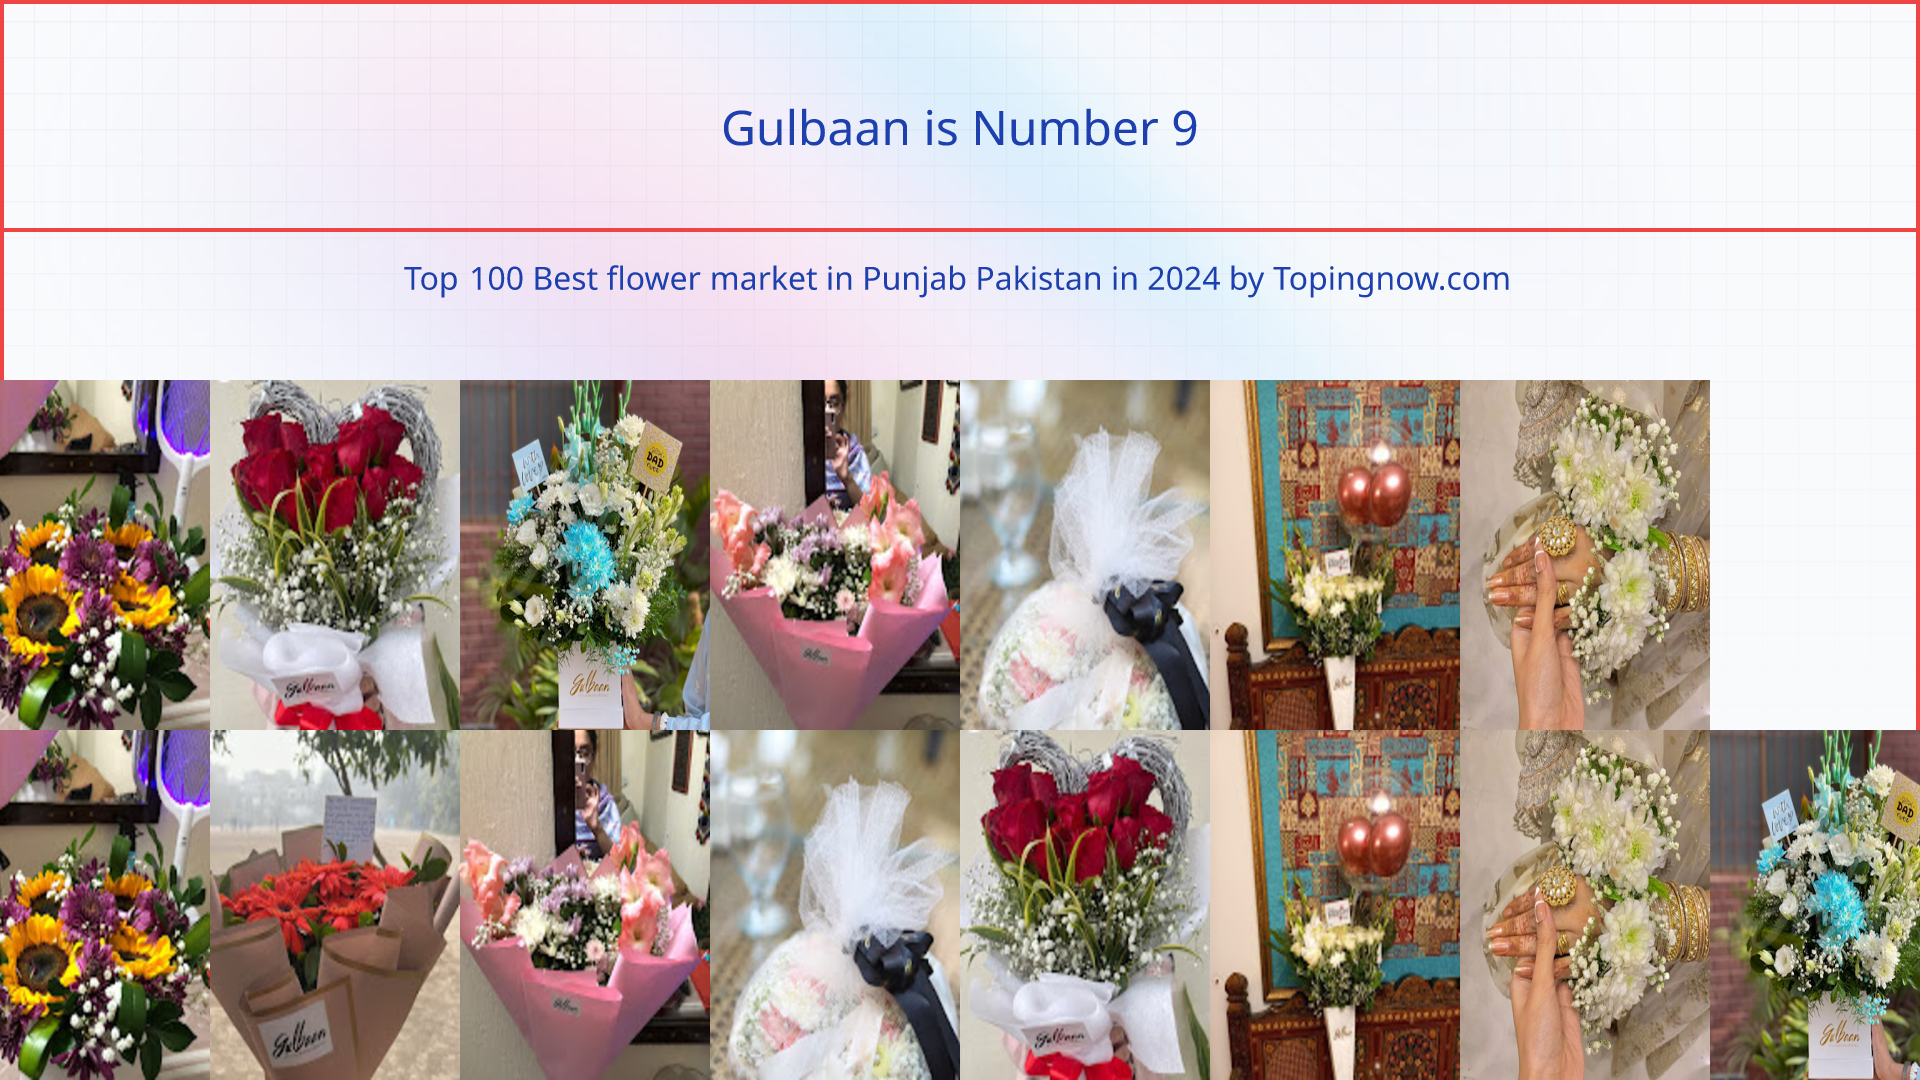 Gulbaan: Top 100 Best flower market in Punjab Pakistan in 2024